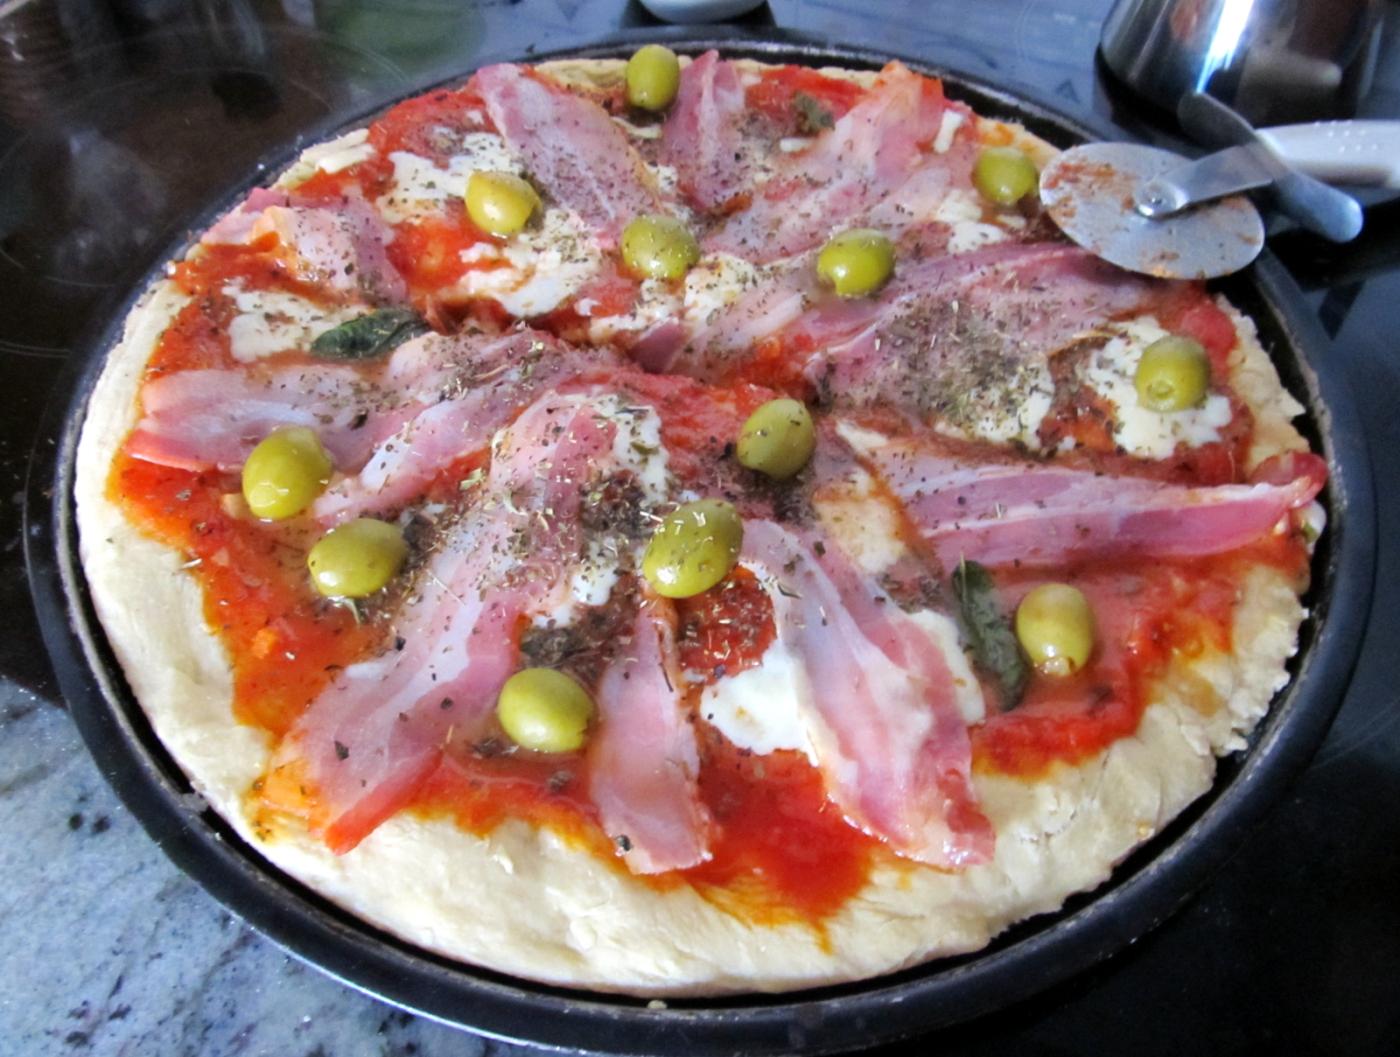 Pizza casera, elaboración propia de quien esto escribe - verano de 2012